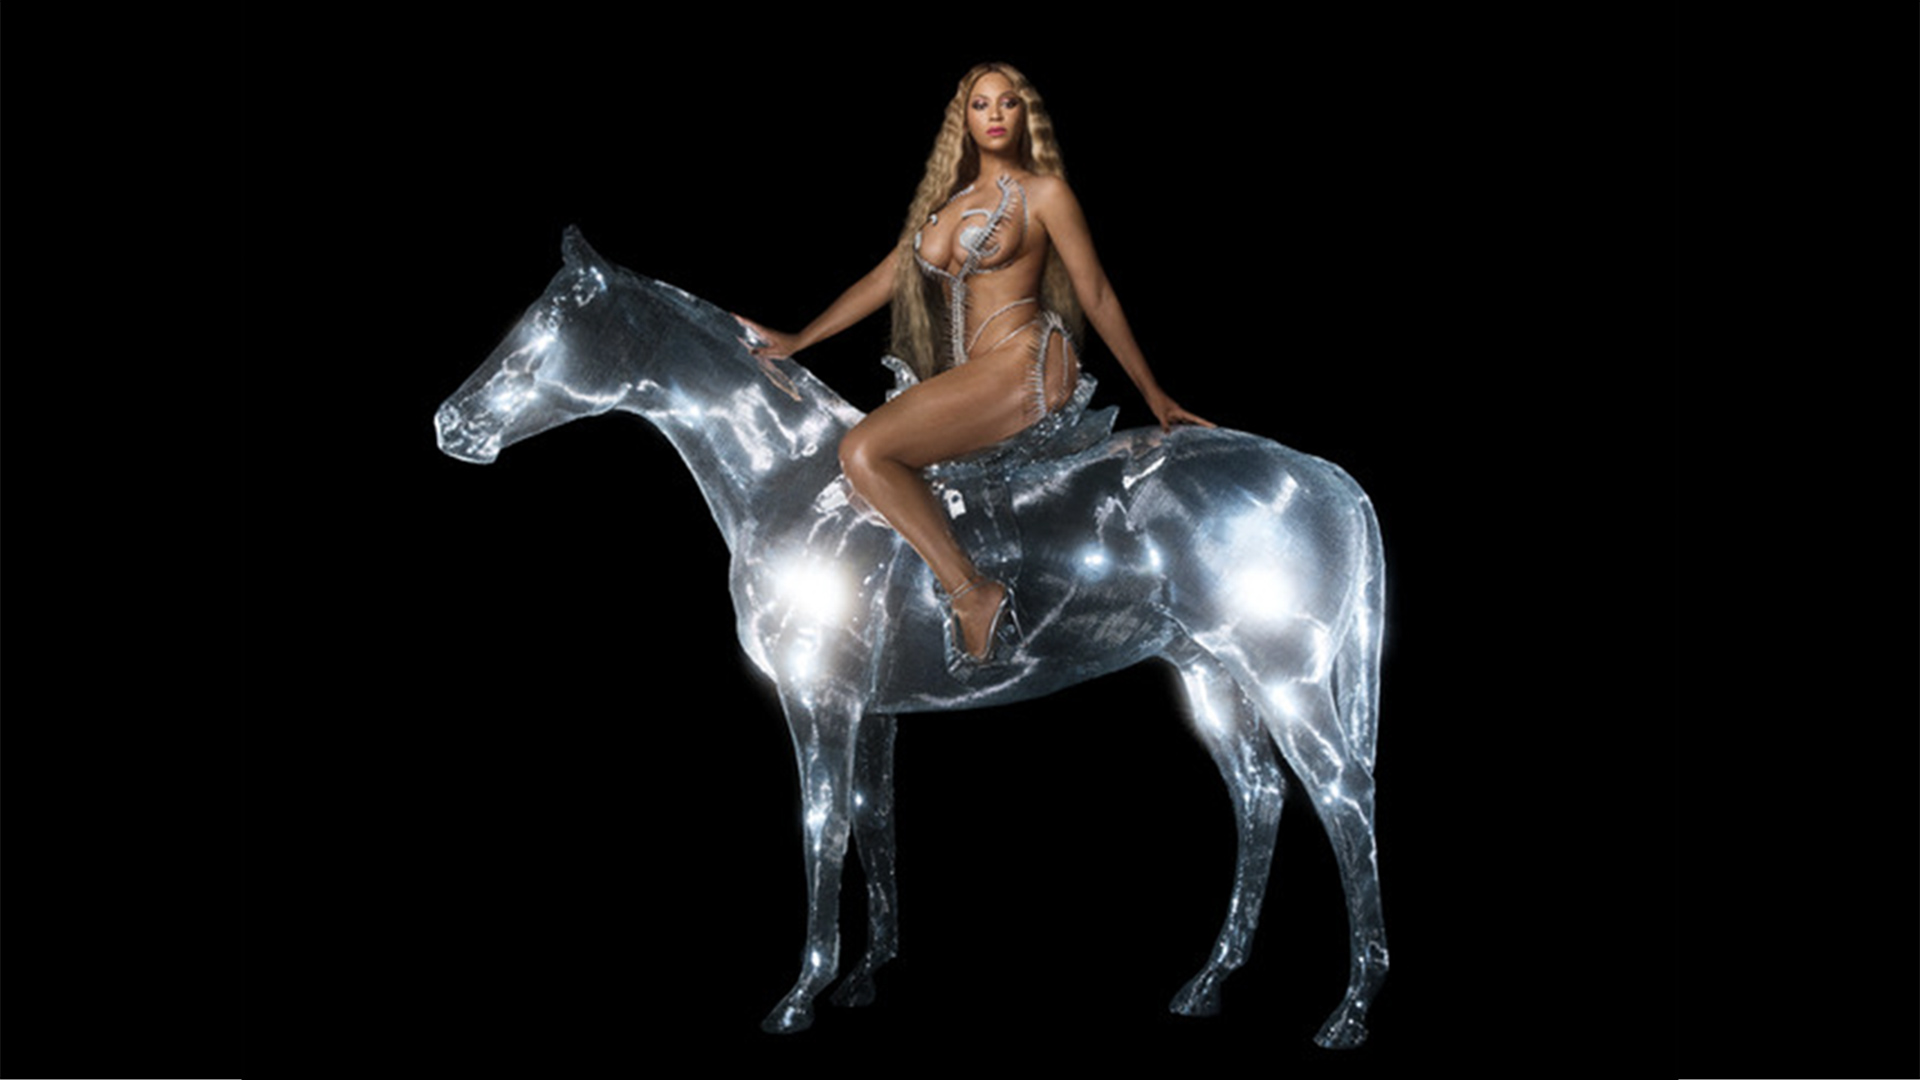 Renaissance by Beyoncé album cover